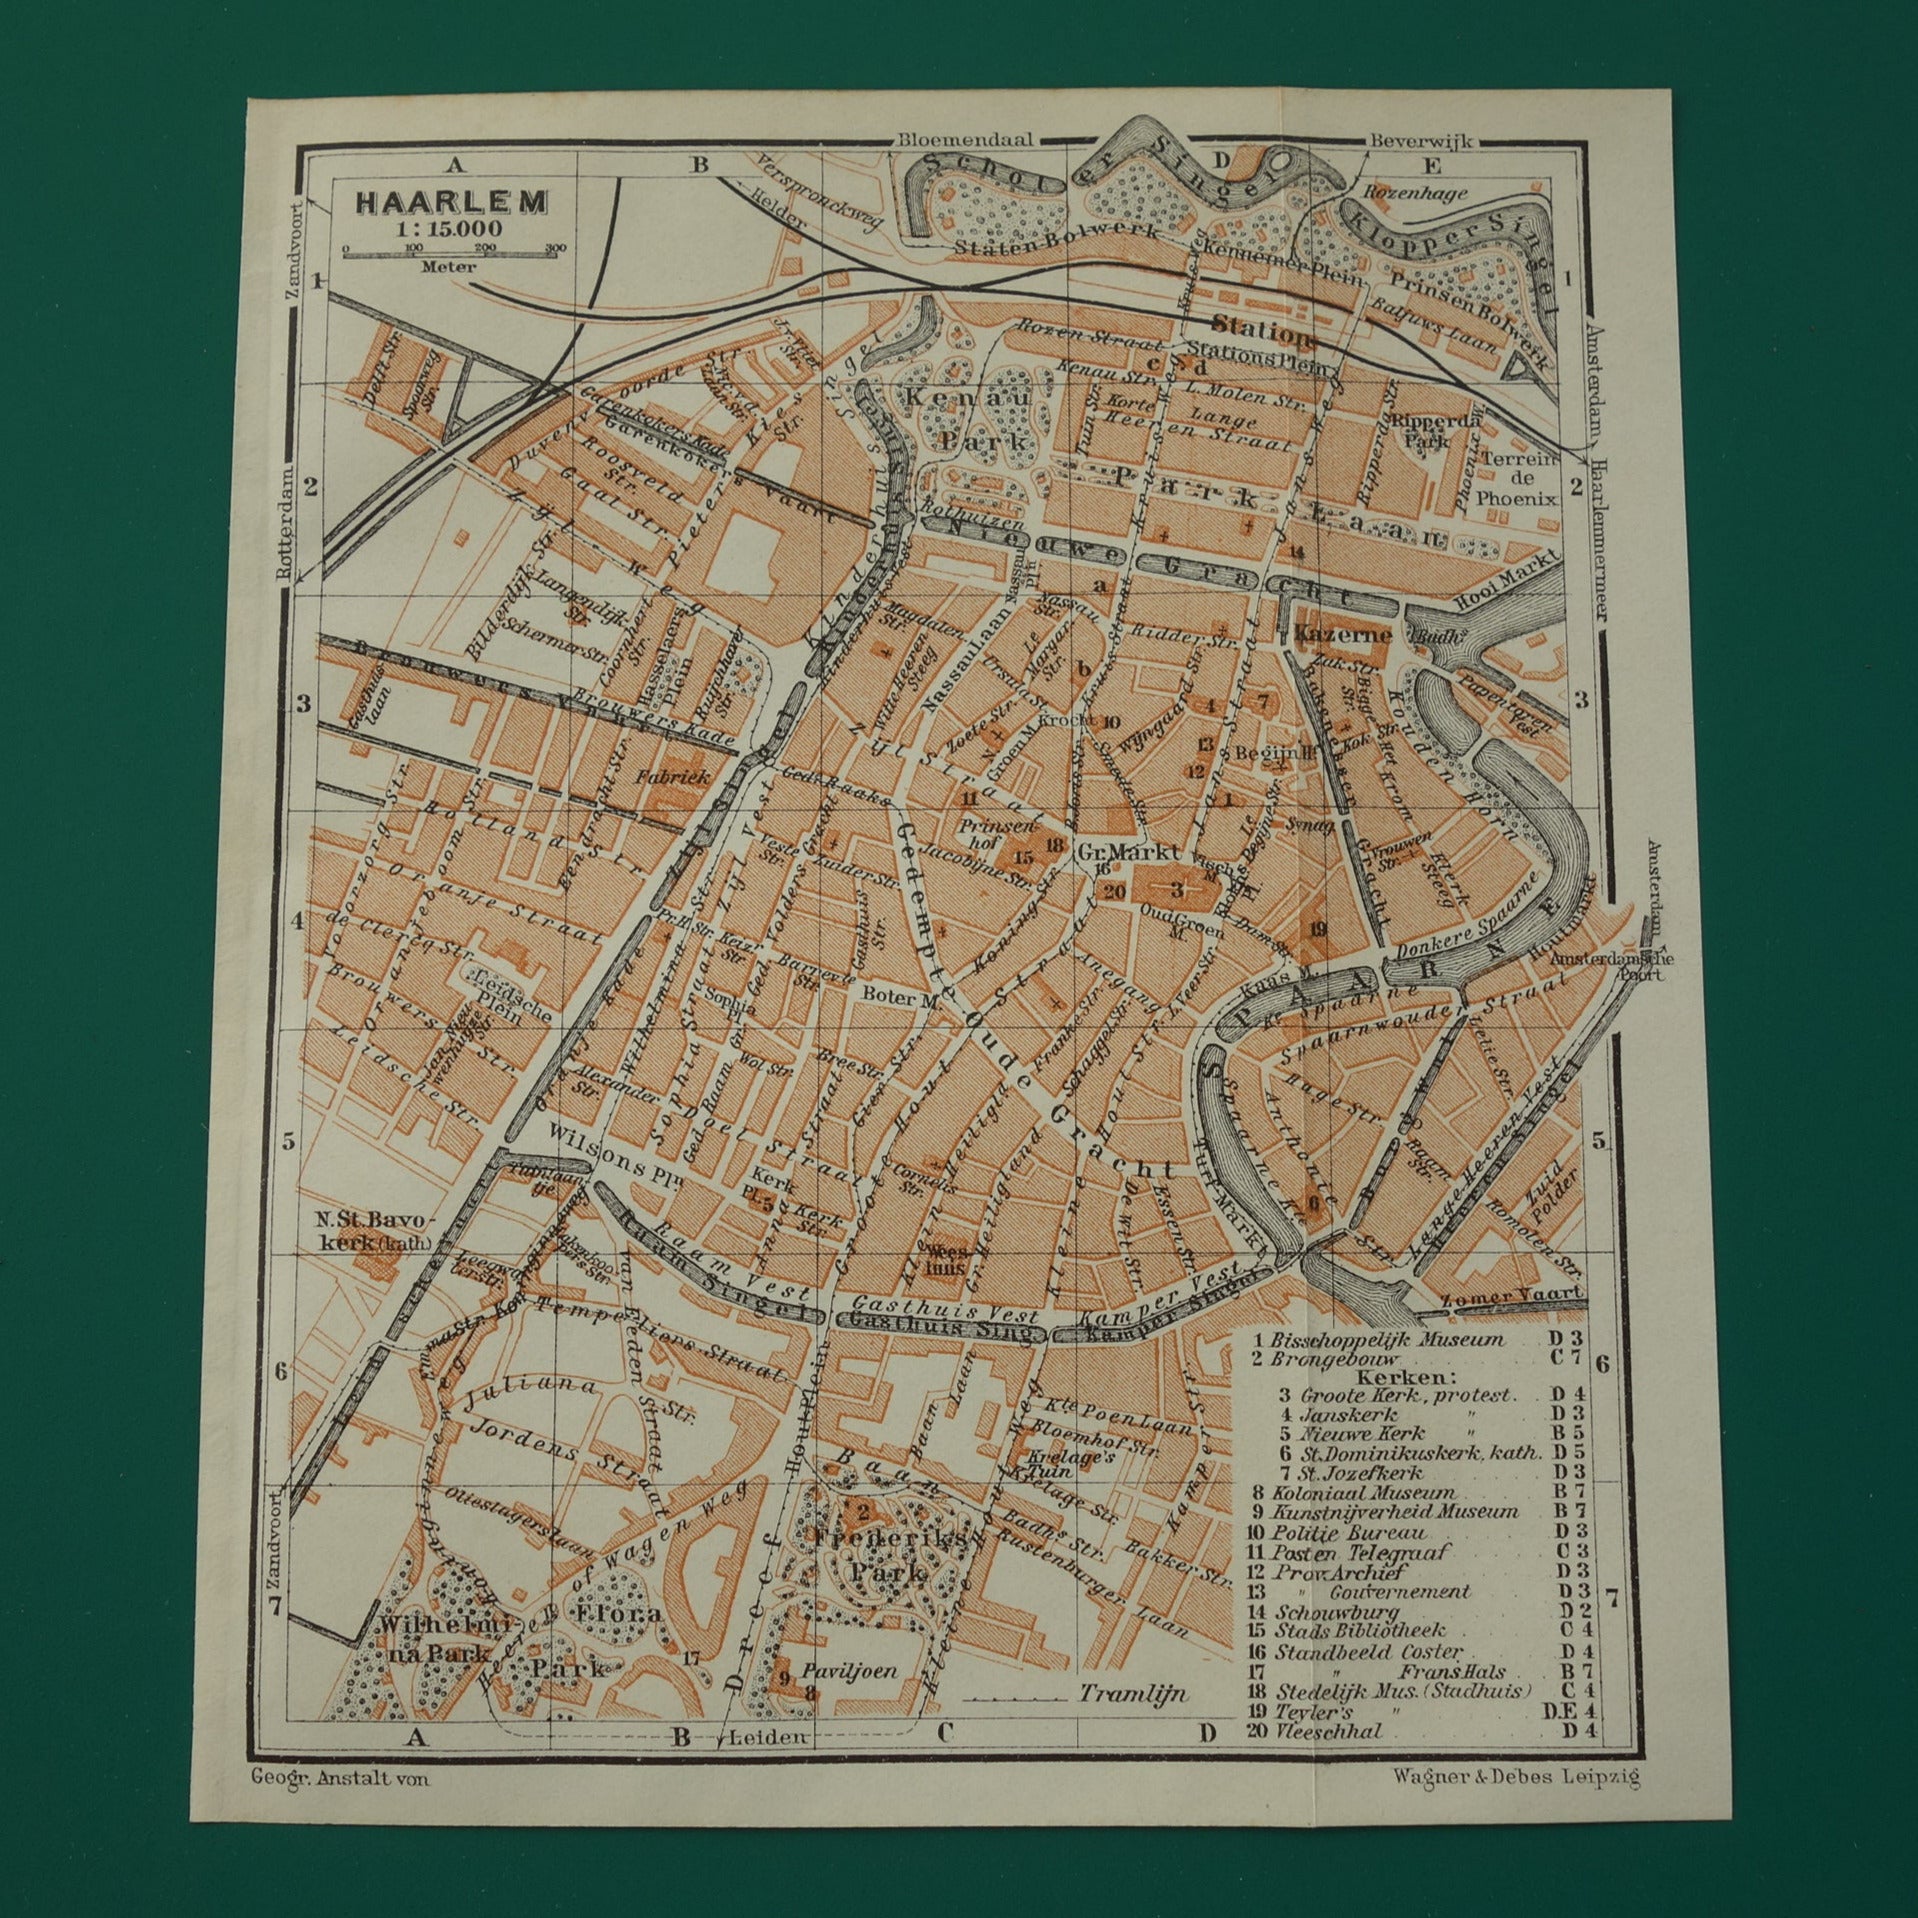 HAARLEM oude kaart van Haarlem uit 1910 kleine originele antieke plattegrond